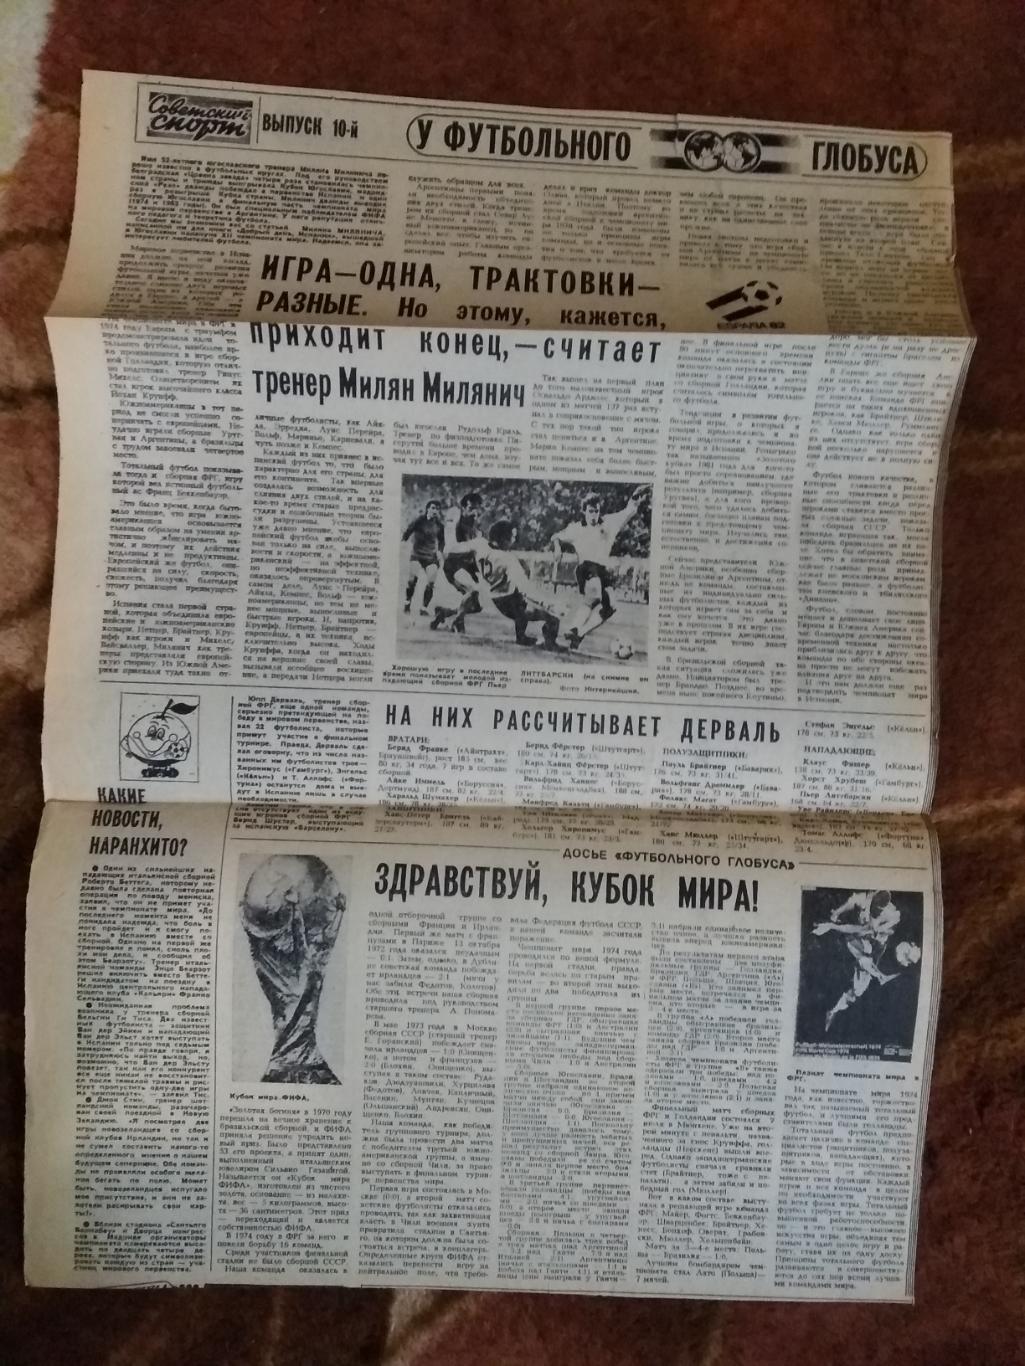 У футбольного глобуса № 10 30.05.1982 г. Советский спорт. (ЧМ 1982).